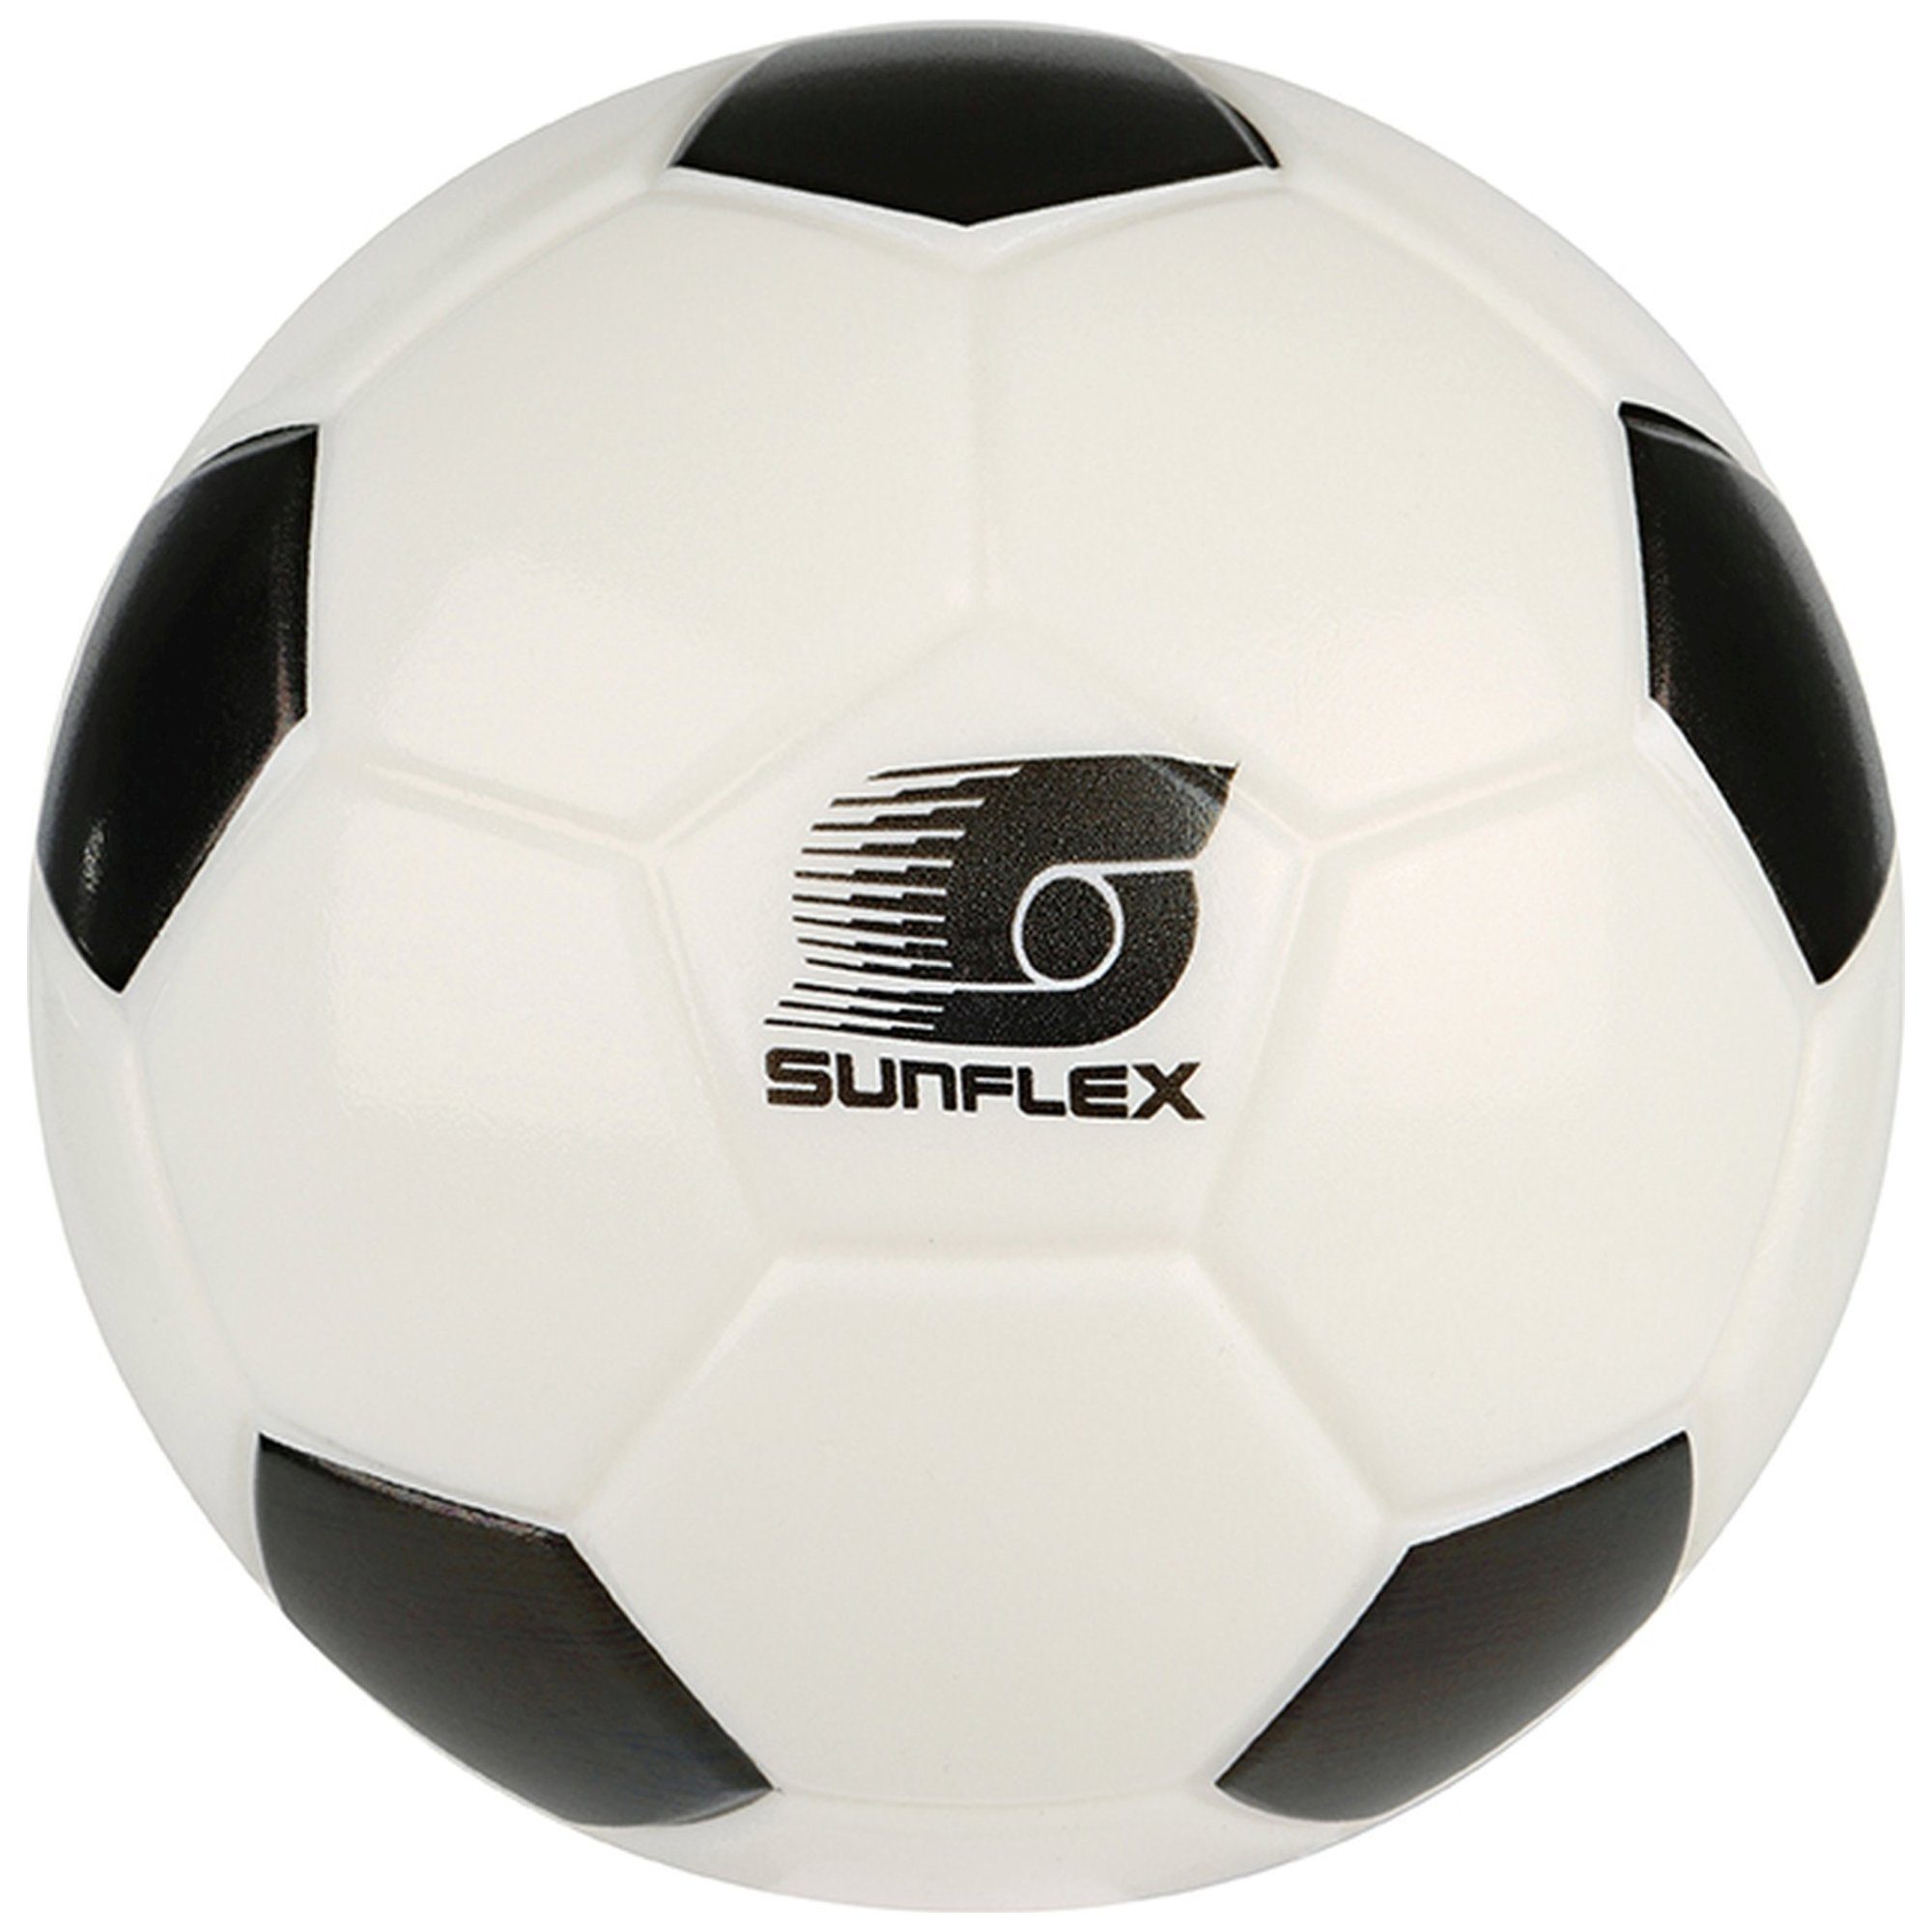 Sunflex Fußball sunflex Softball Fußball